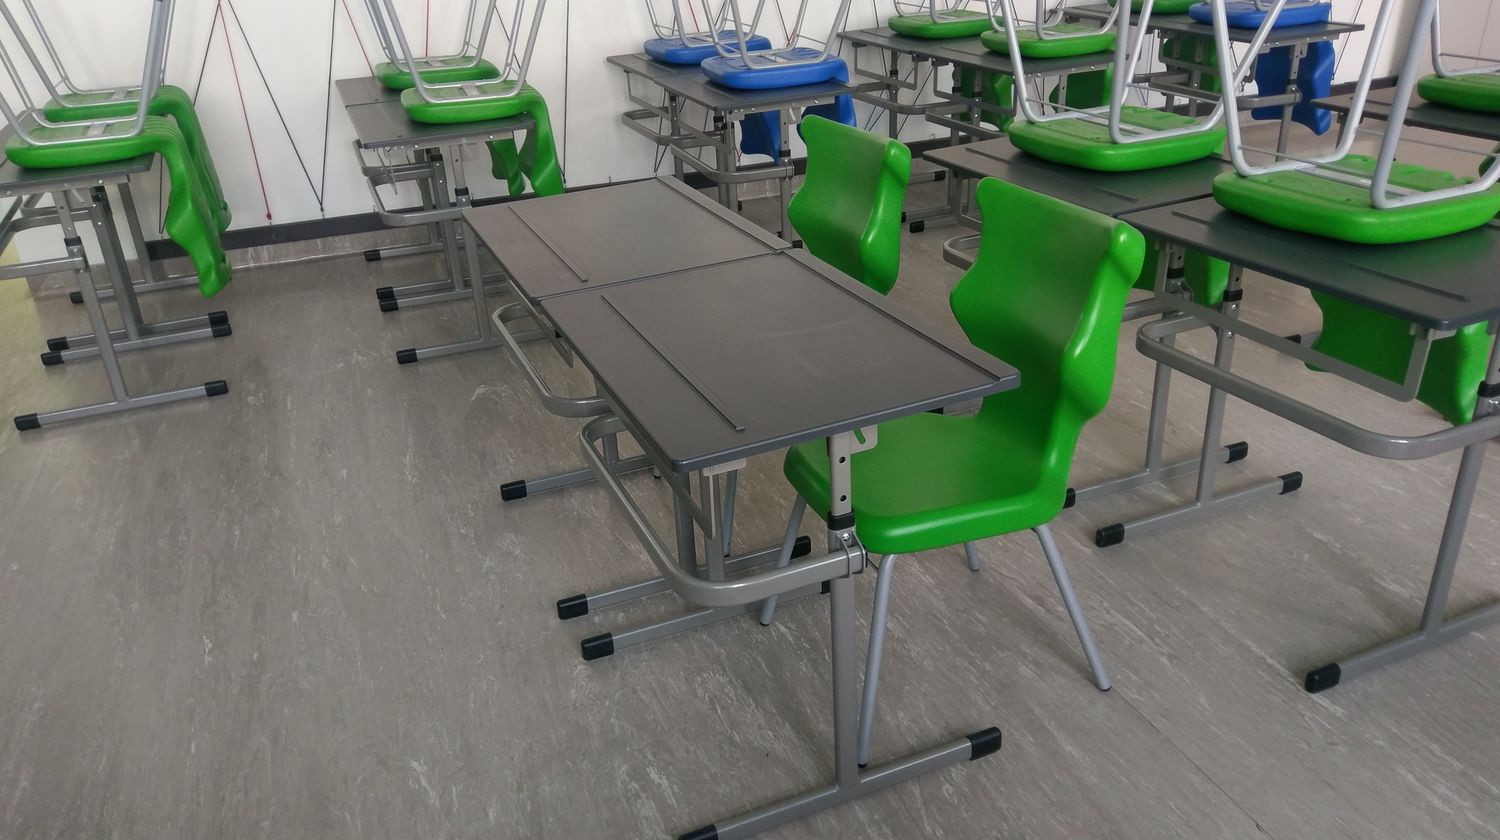 meble szkolne, krzesła uczniowskie, ergonomiczne krzesła do szkoły